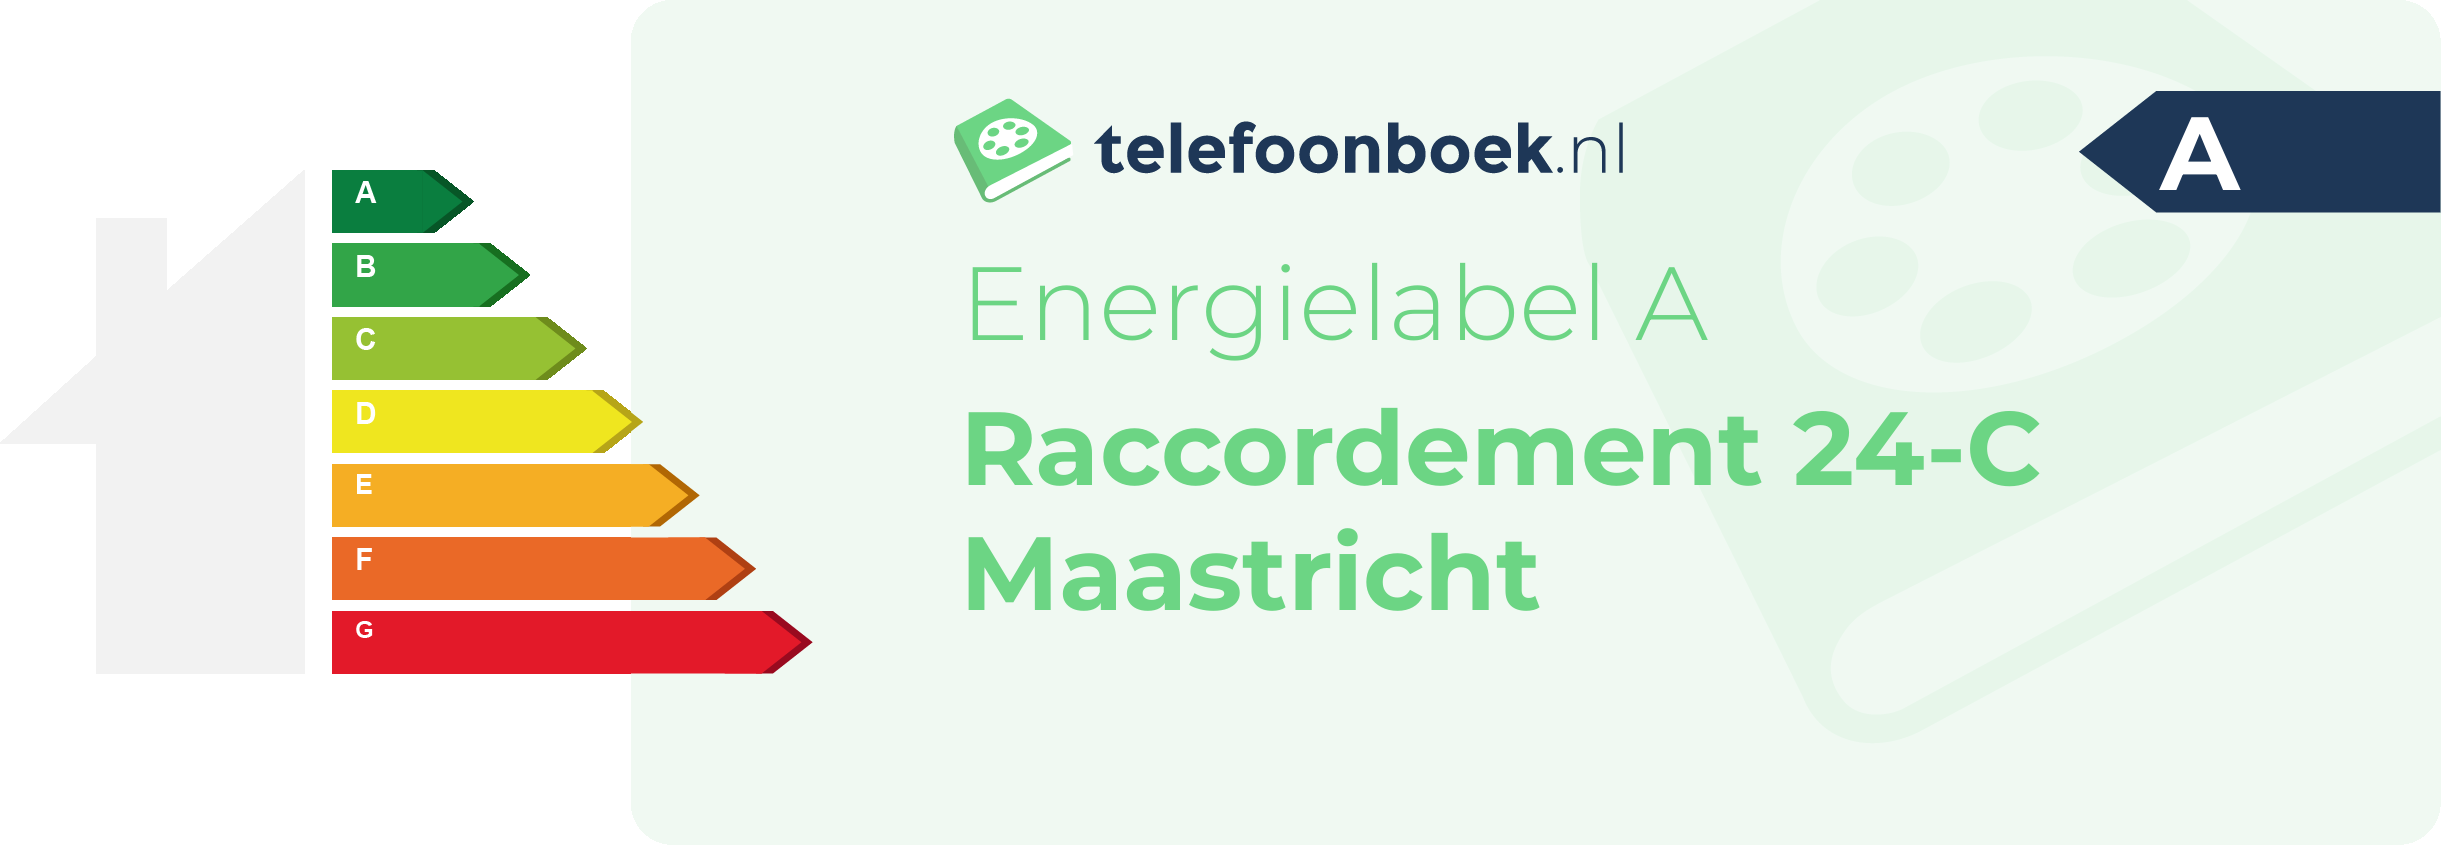 Energielabel Raccordement 24-C Maastricht